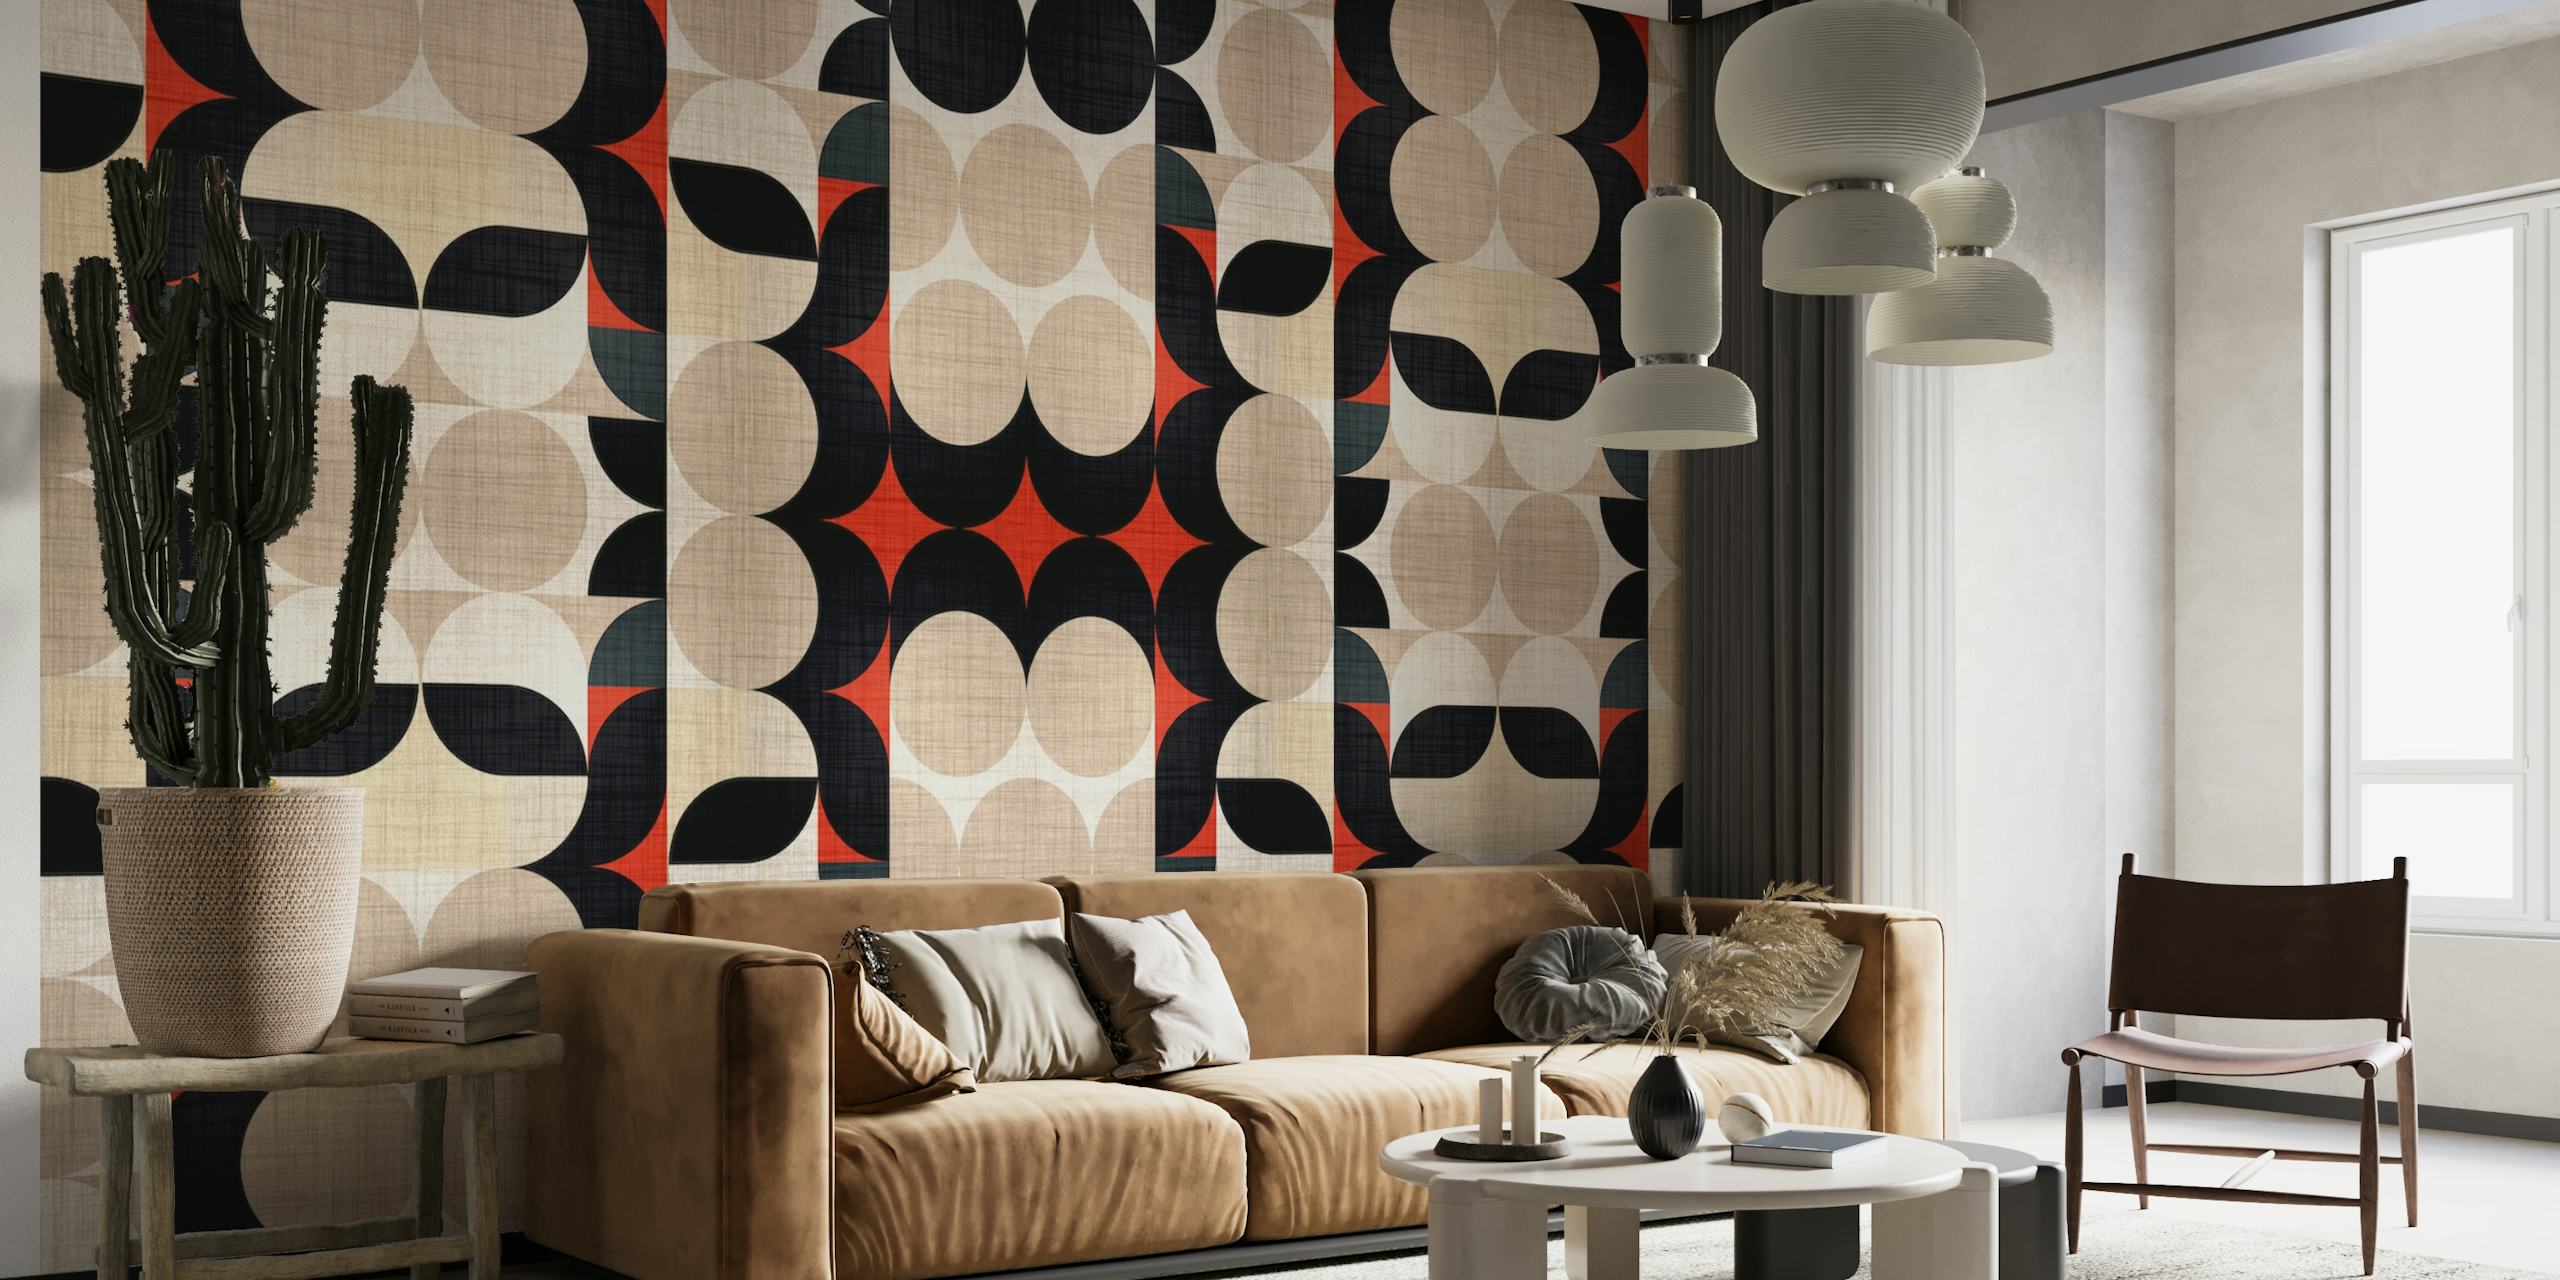 Bauhaus Fabric Pattern wallpaper